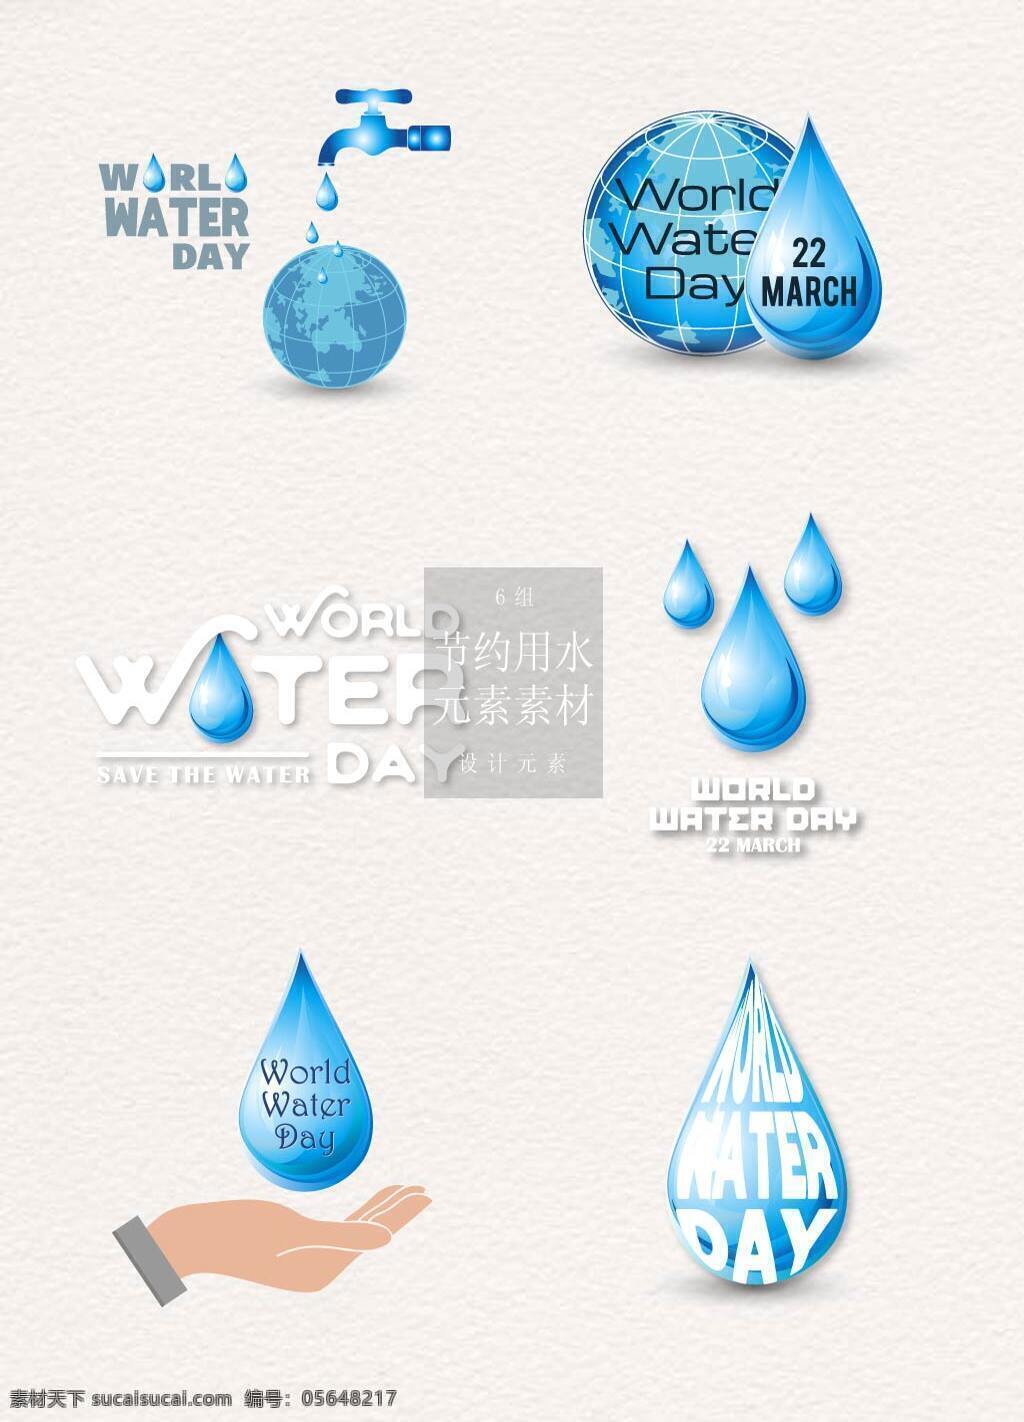 节约 用水 标识设计 卡通 水滴 节约用水 标志设计 矢量素材 水龙头 地球 英文